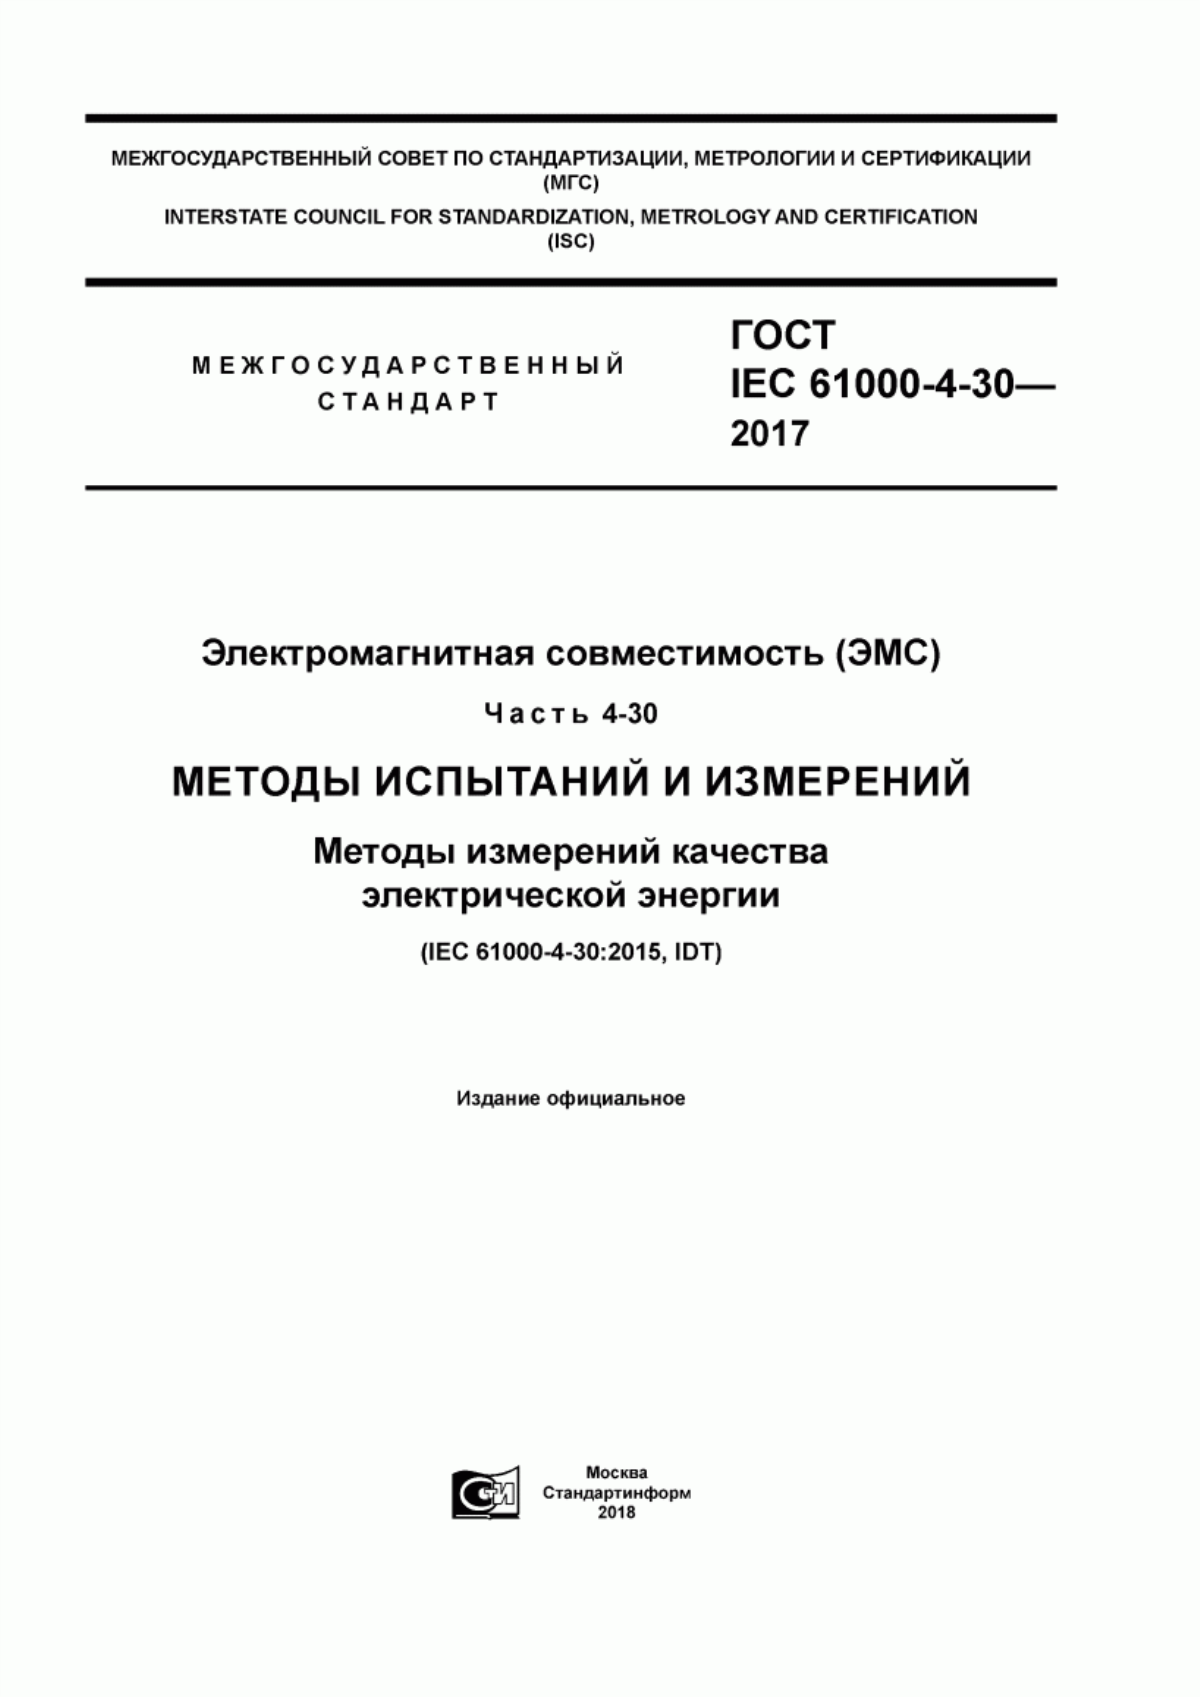 ГОСТ IEC 61000-4-30-2017 Электромагнитная совместимость (ЭМС). Часть 4-30. Методы испытаний и измерений. Методы измерений качества электрической энергии